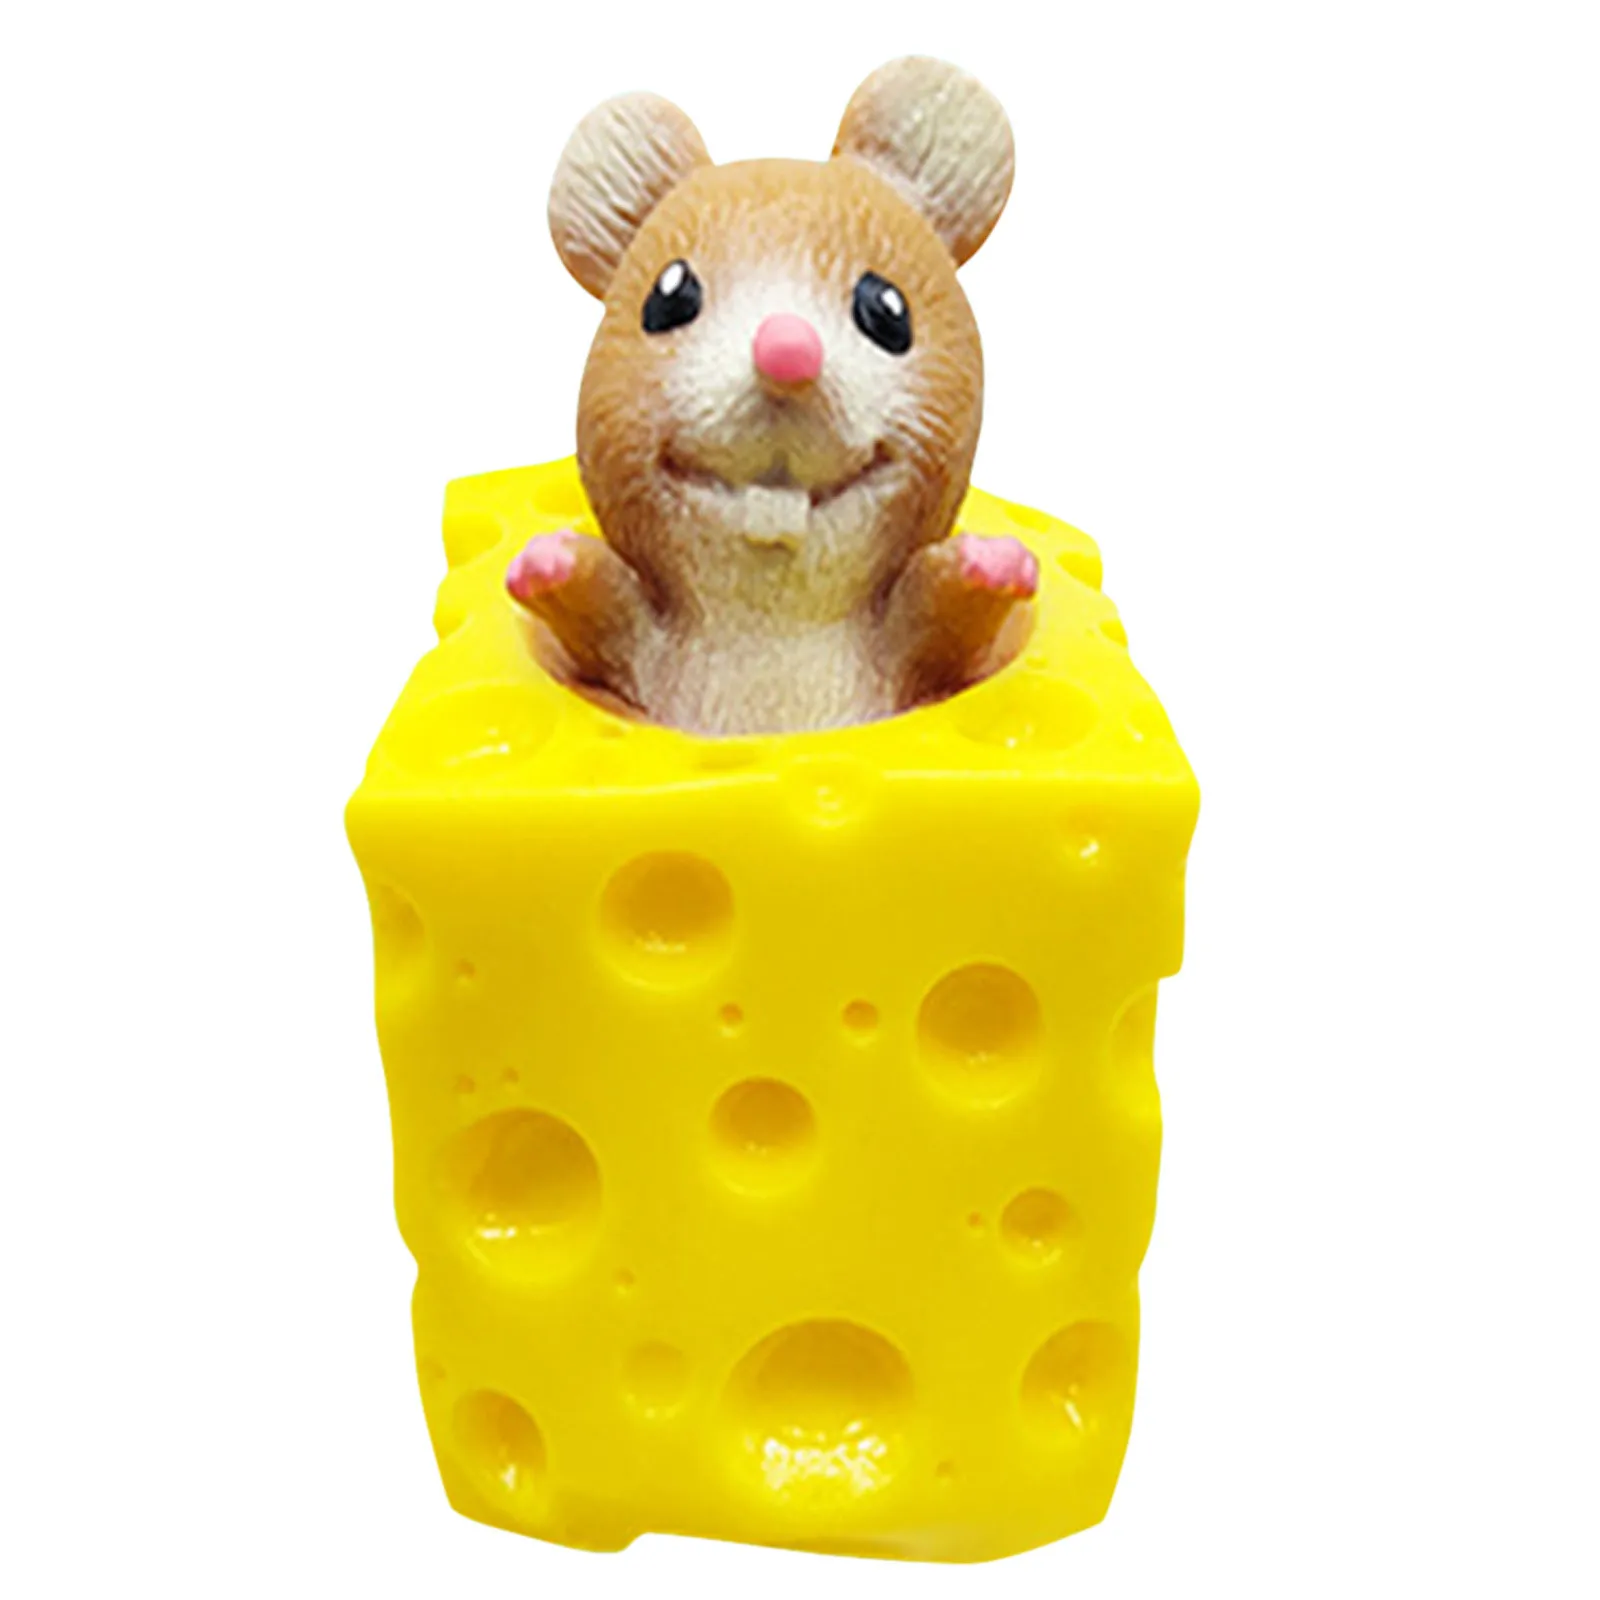 Мышка антистресс. Мышки в сыре игрушка. Мышка в сыре игрушка антистресс. Игрушка мялка- антистресс мышка в сыре. Игрушка мышки с сыром антистресс.